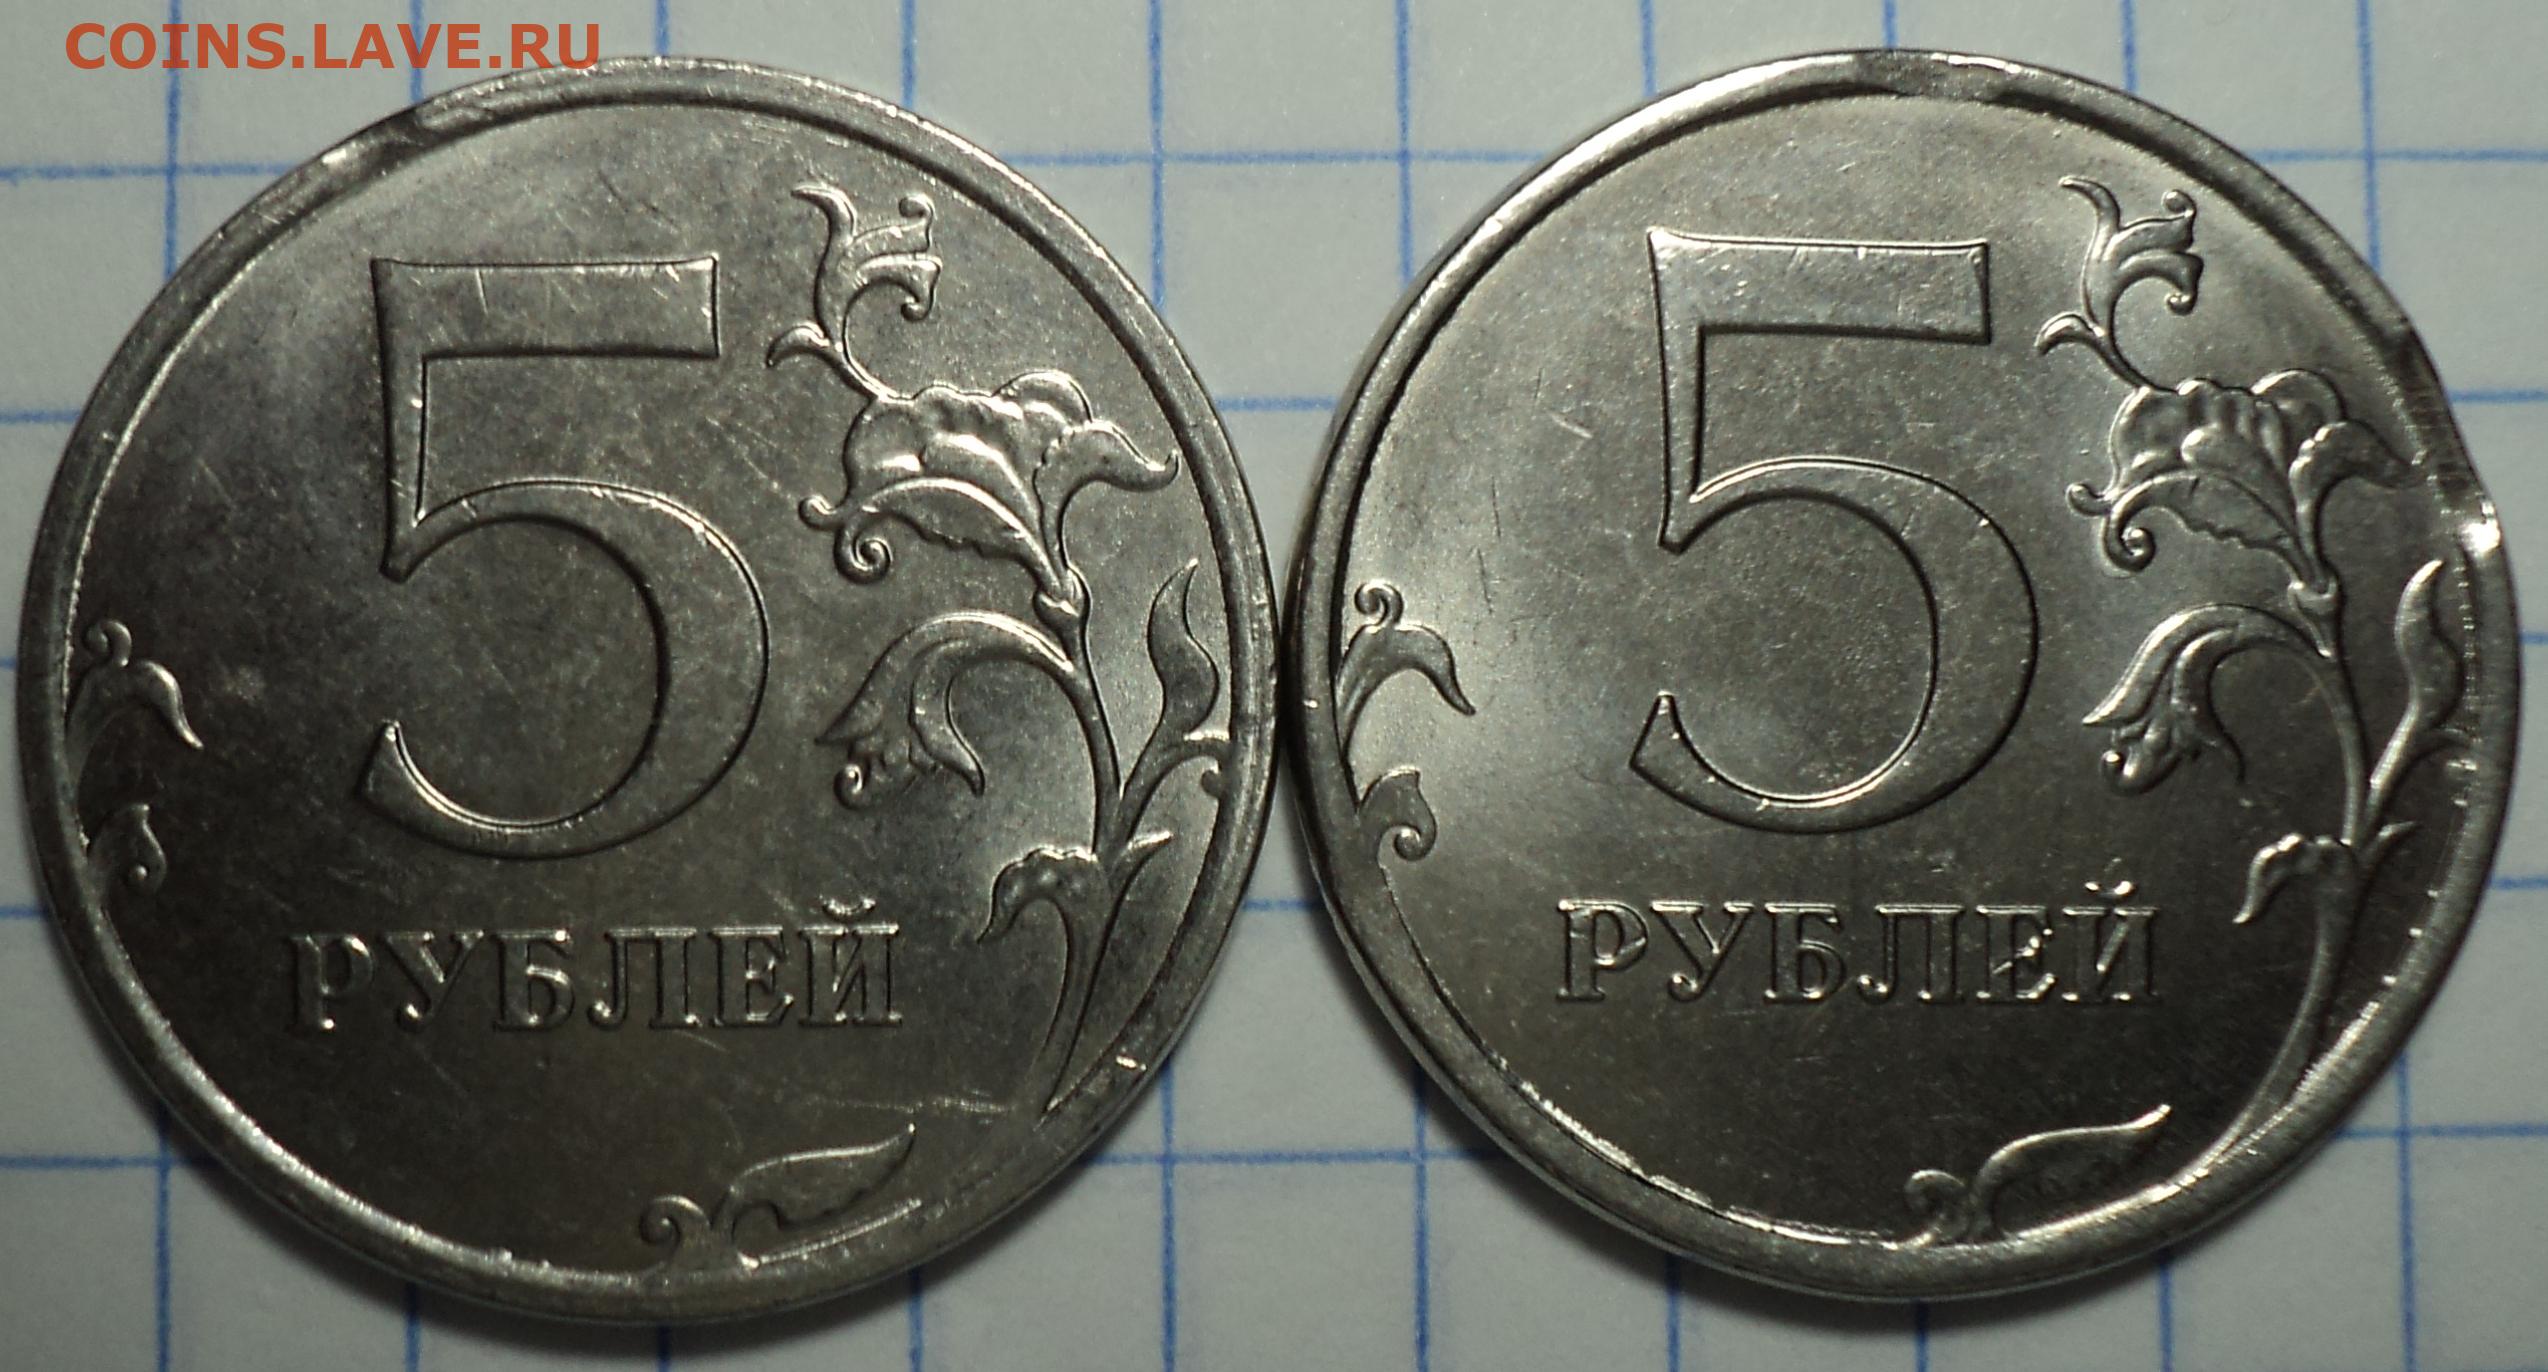 Восемьдесят девять рублей. Выкус монета 5 копеек. 12.5 Рублей монета. 5 Копеек 98. Монета 9 рублей и 10 копеек.